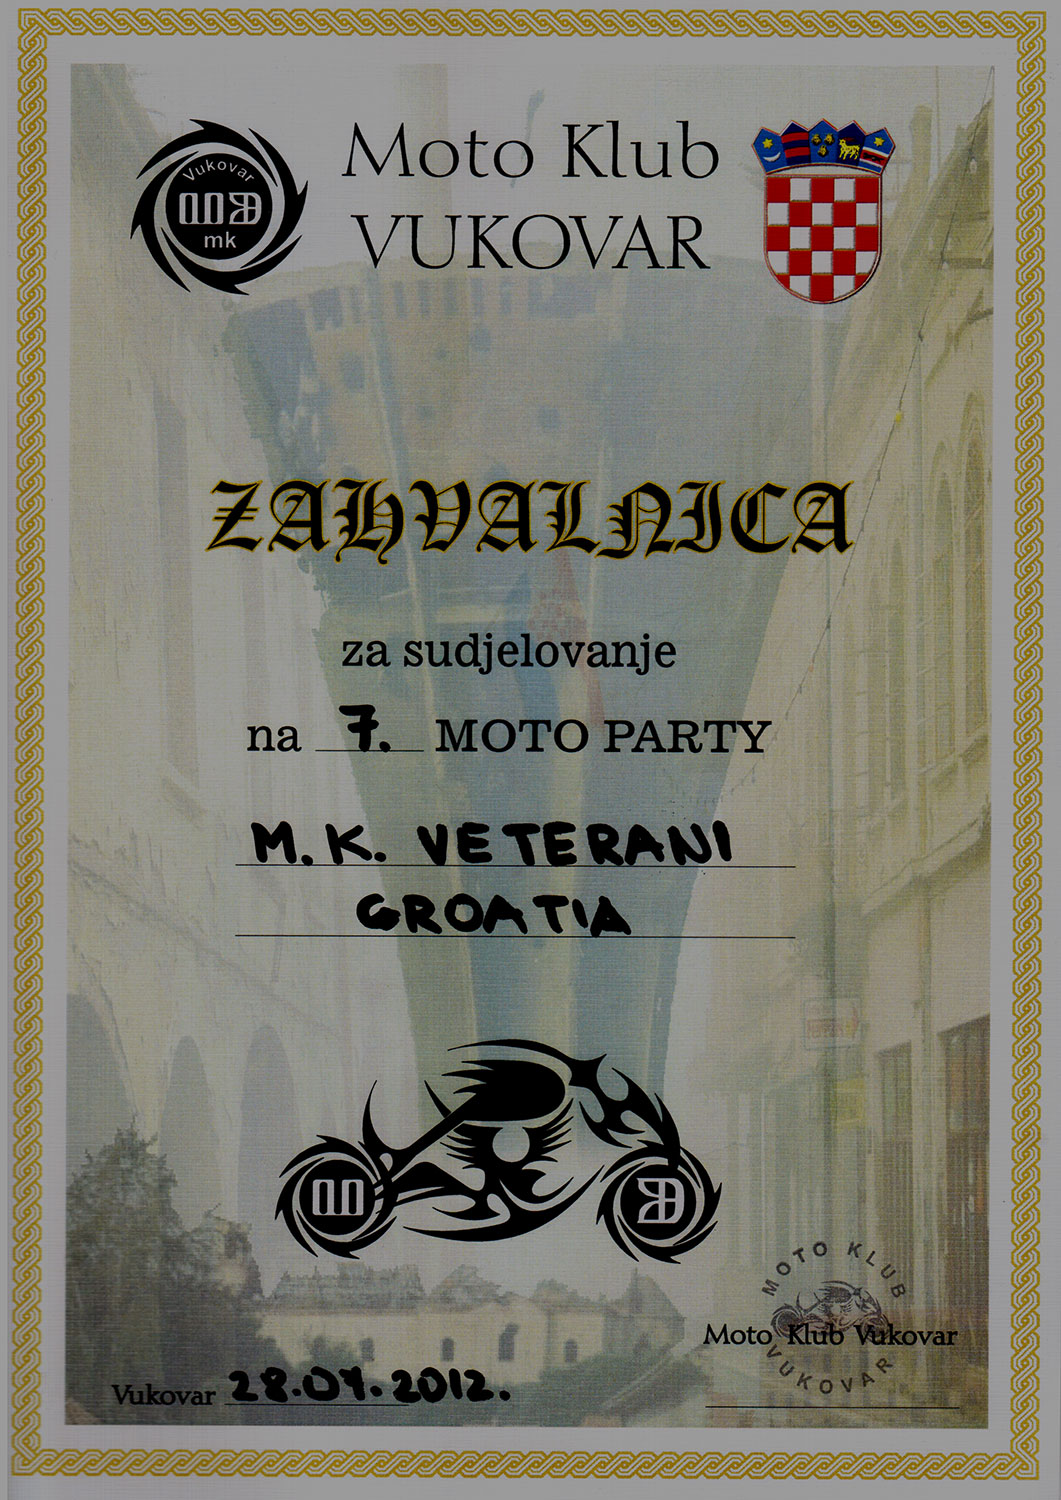 2012 07 28 mk vukovar vukovar